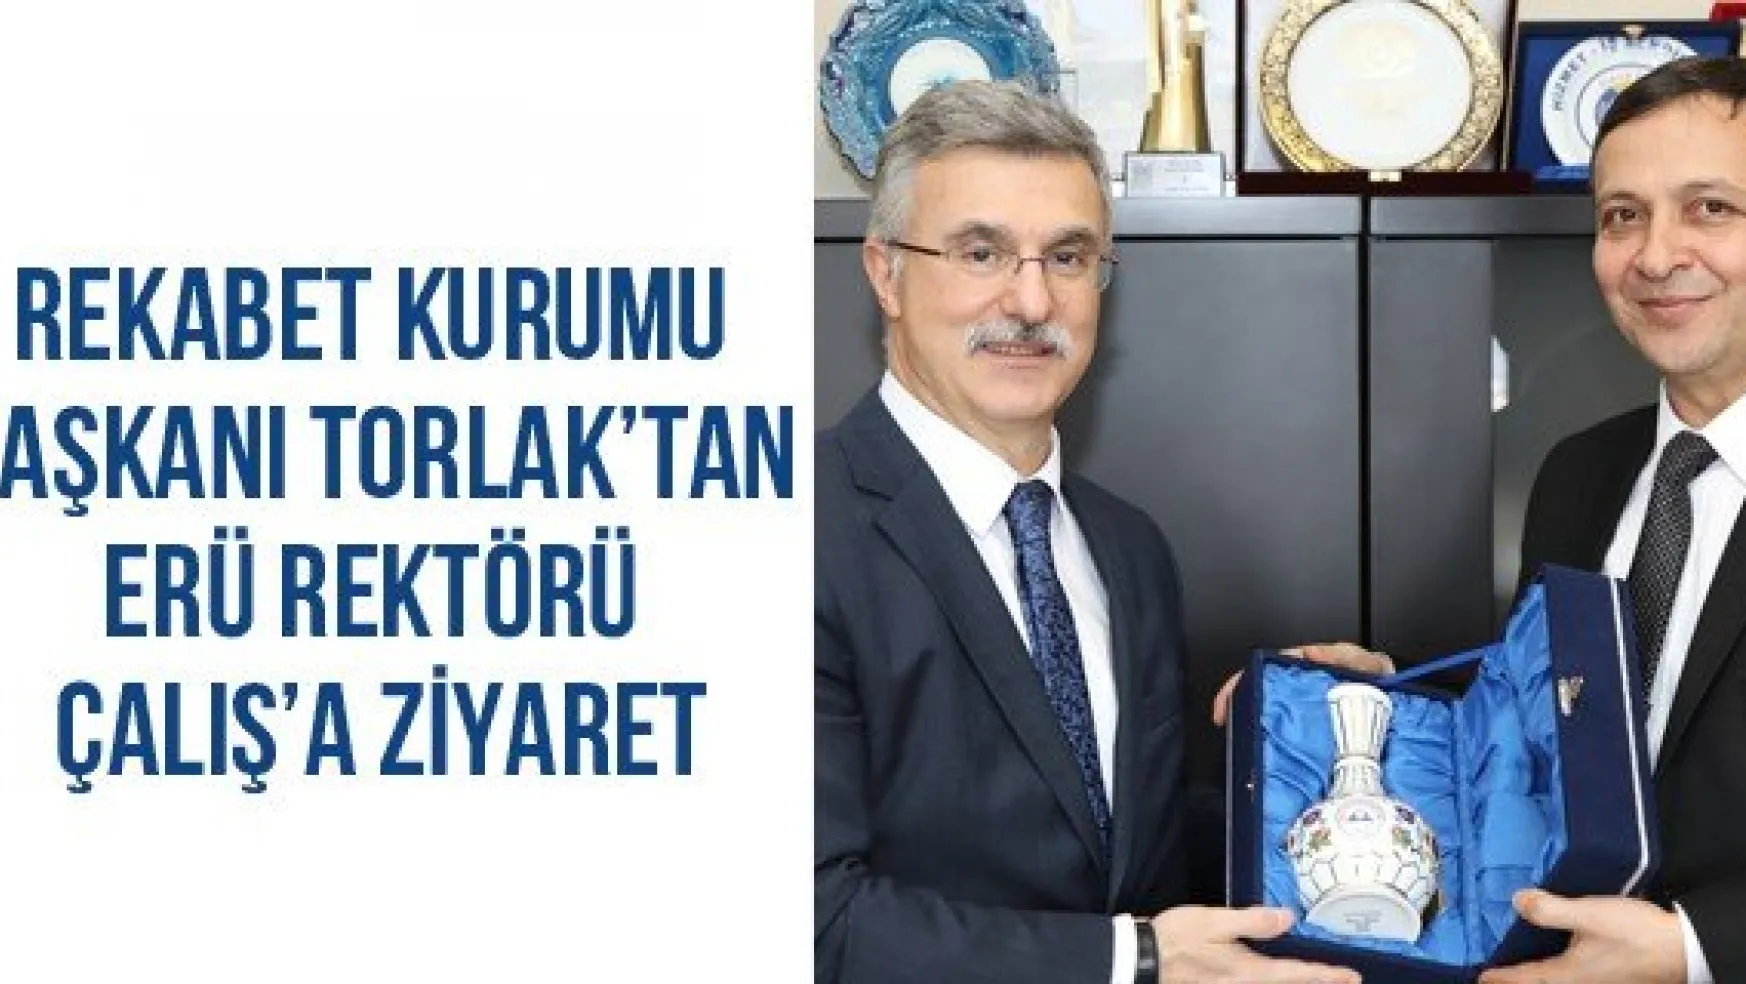 Rekabet Kurumu Başkanı Torlak'tan ERÜ Rektörü Çalış'a Ziyaret